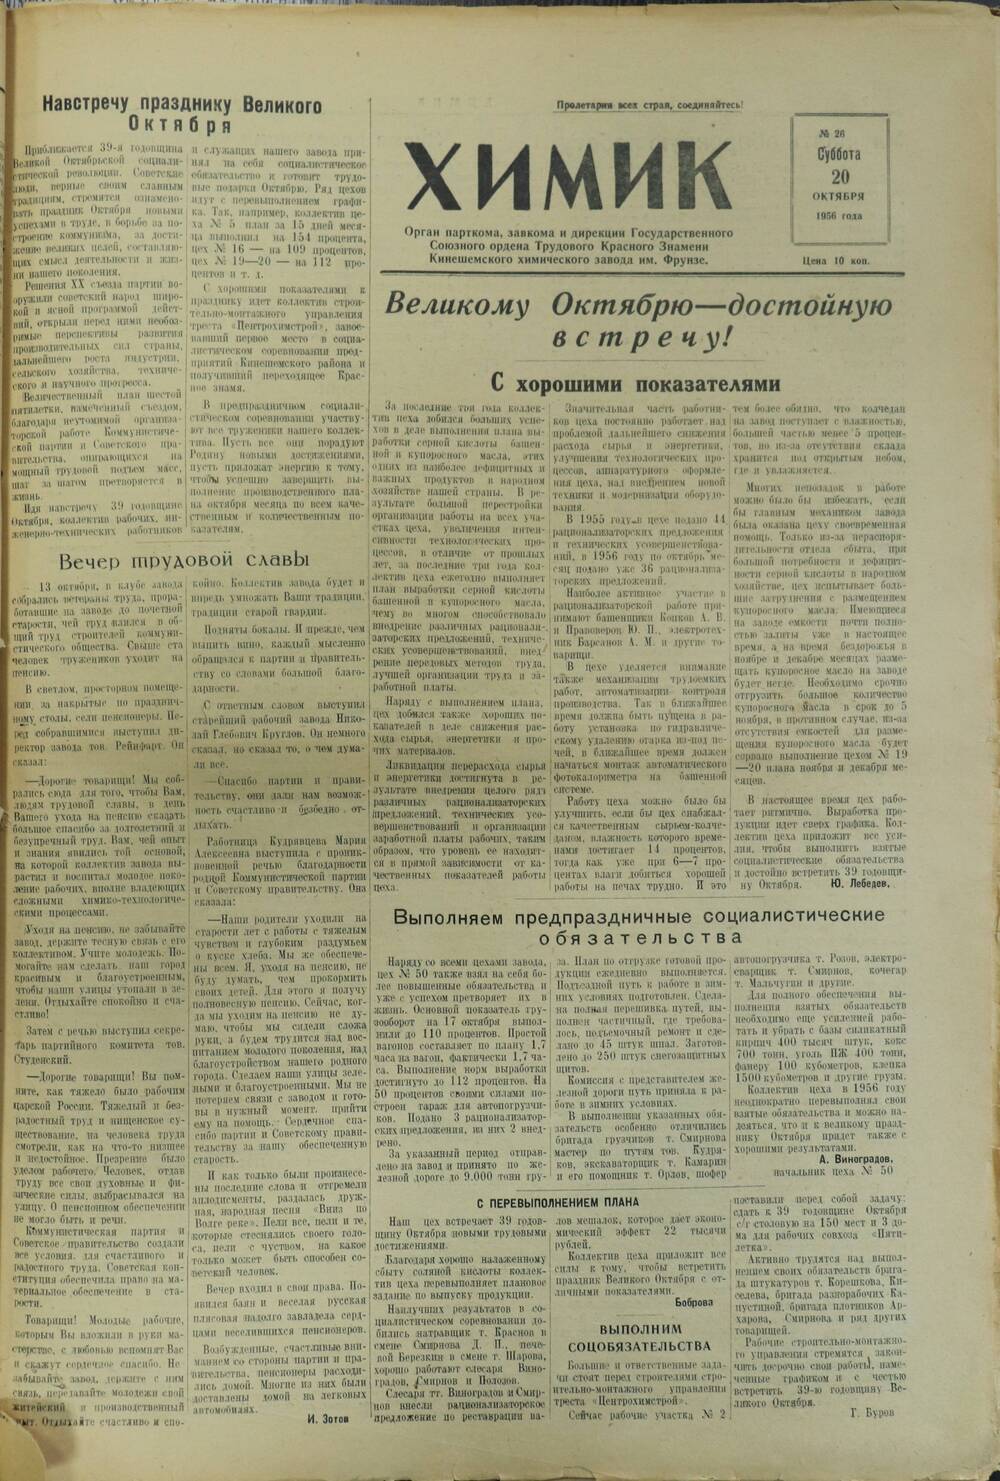 Газета «Химик» № 26 от 20 октября 1956 года.